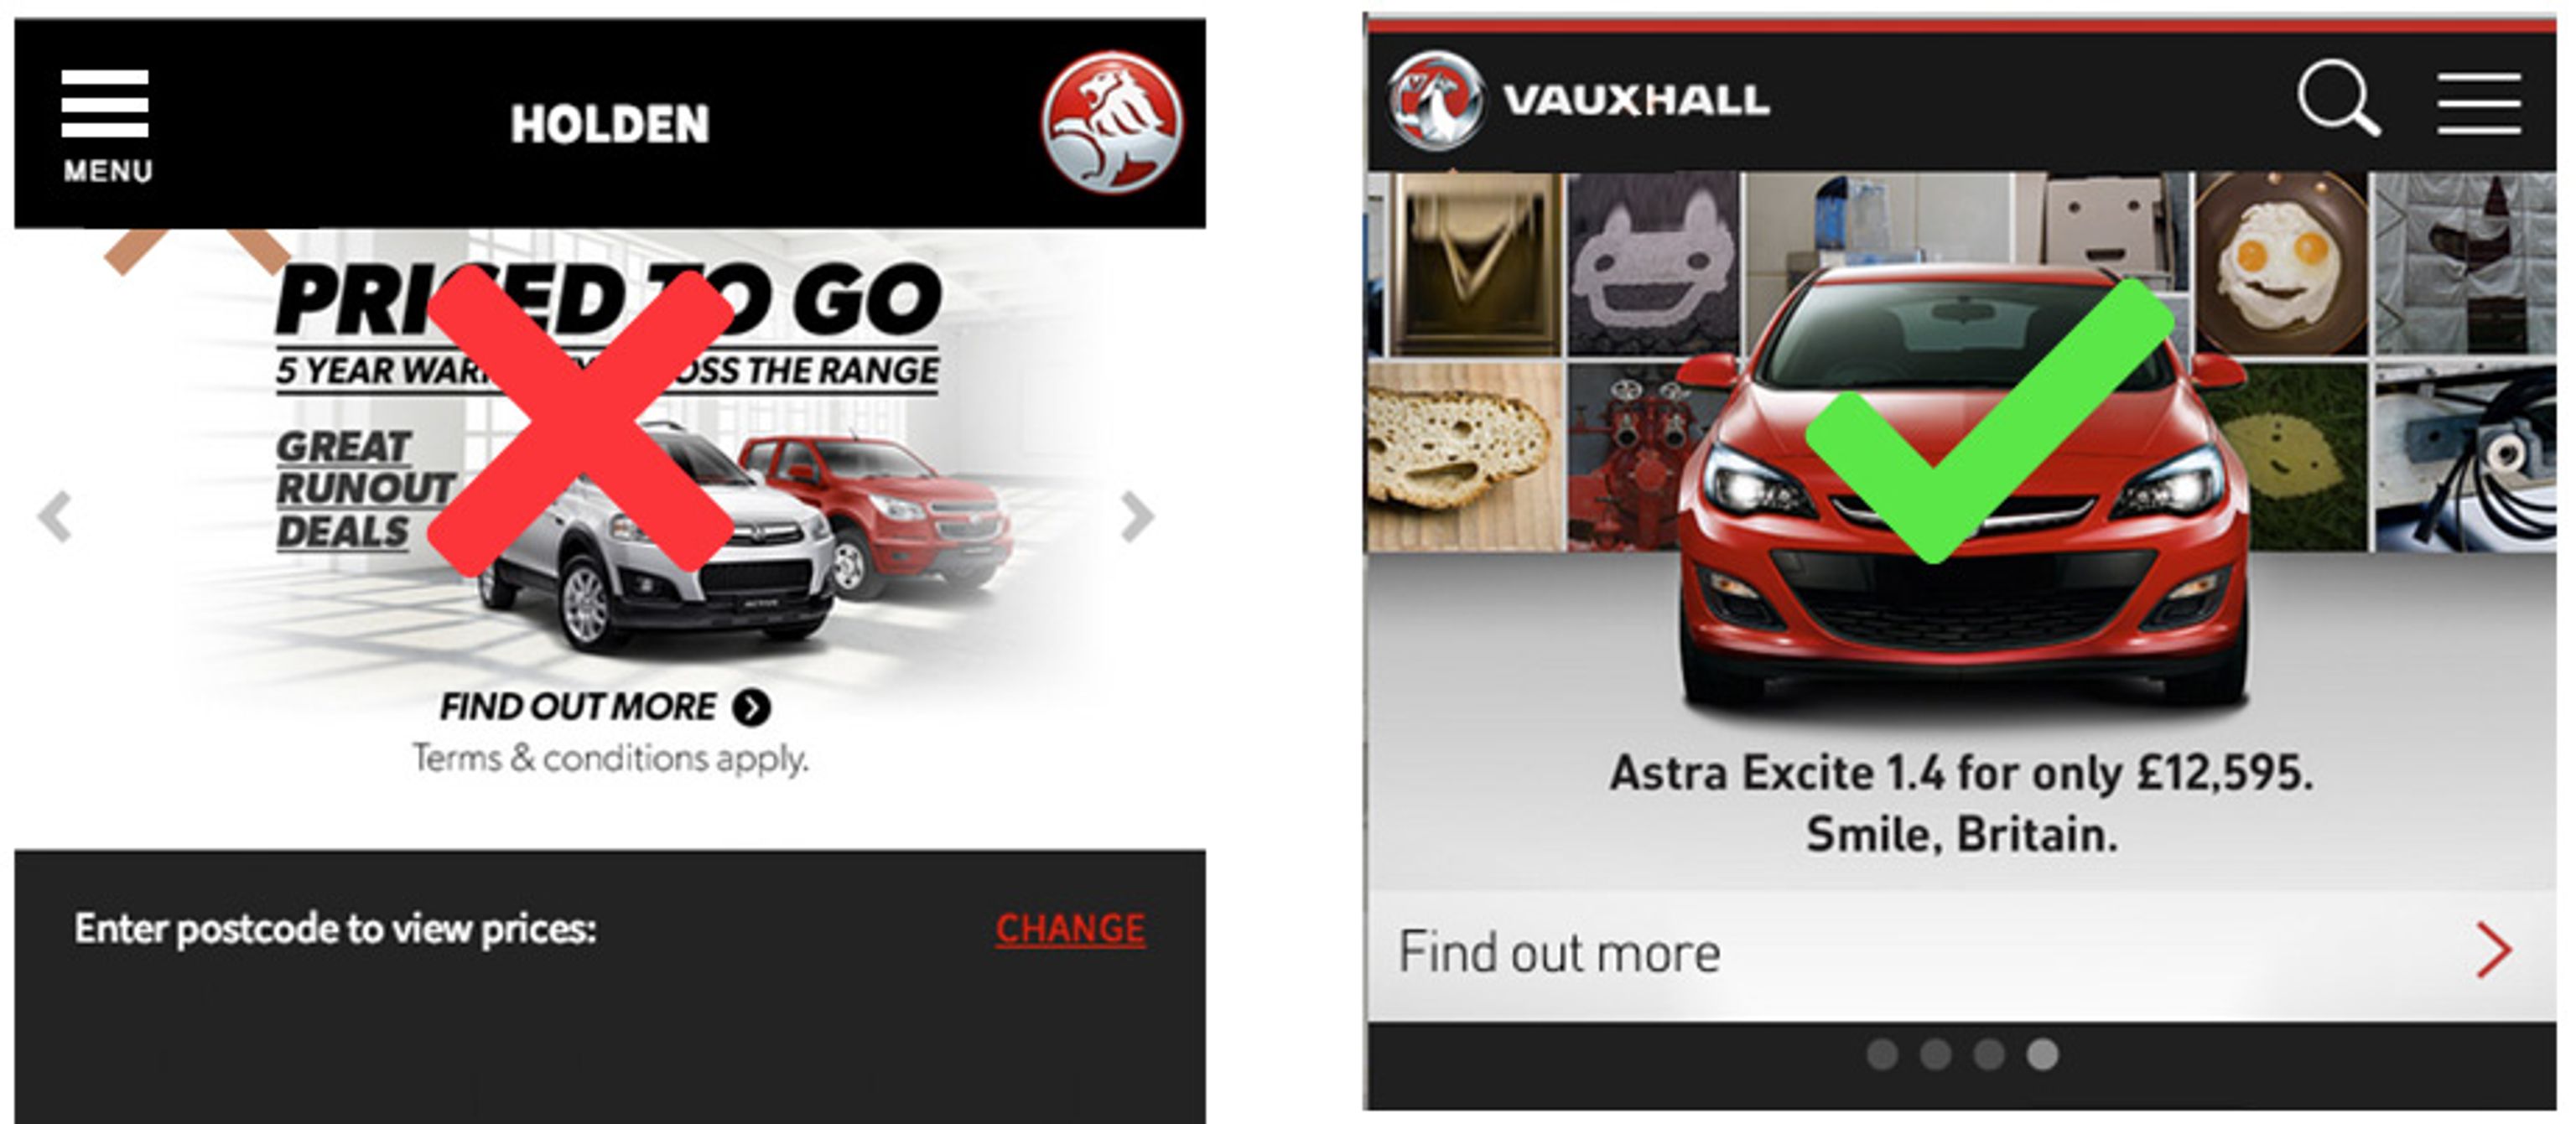 Holden vs Vauxhall mobile site 2014